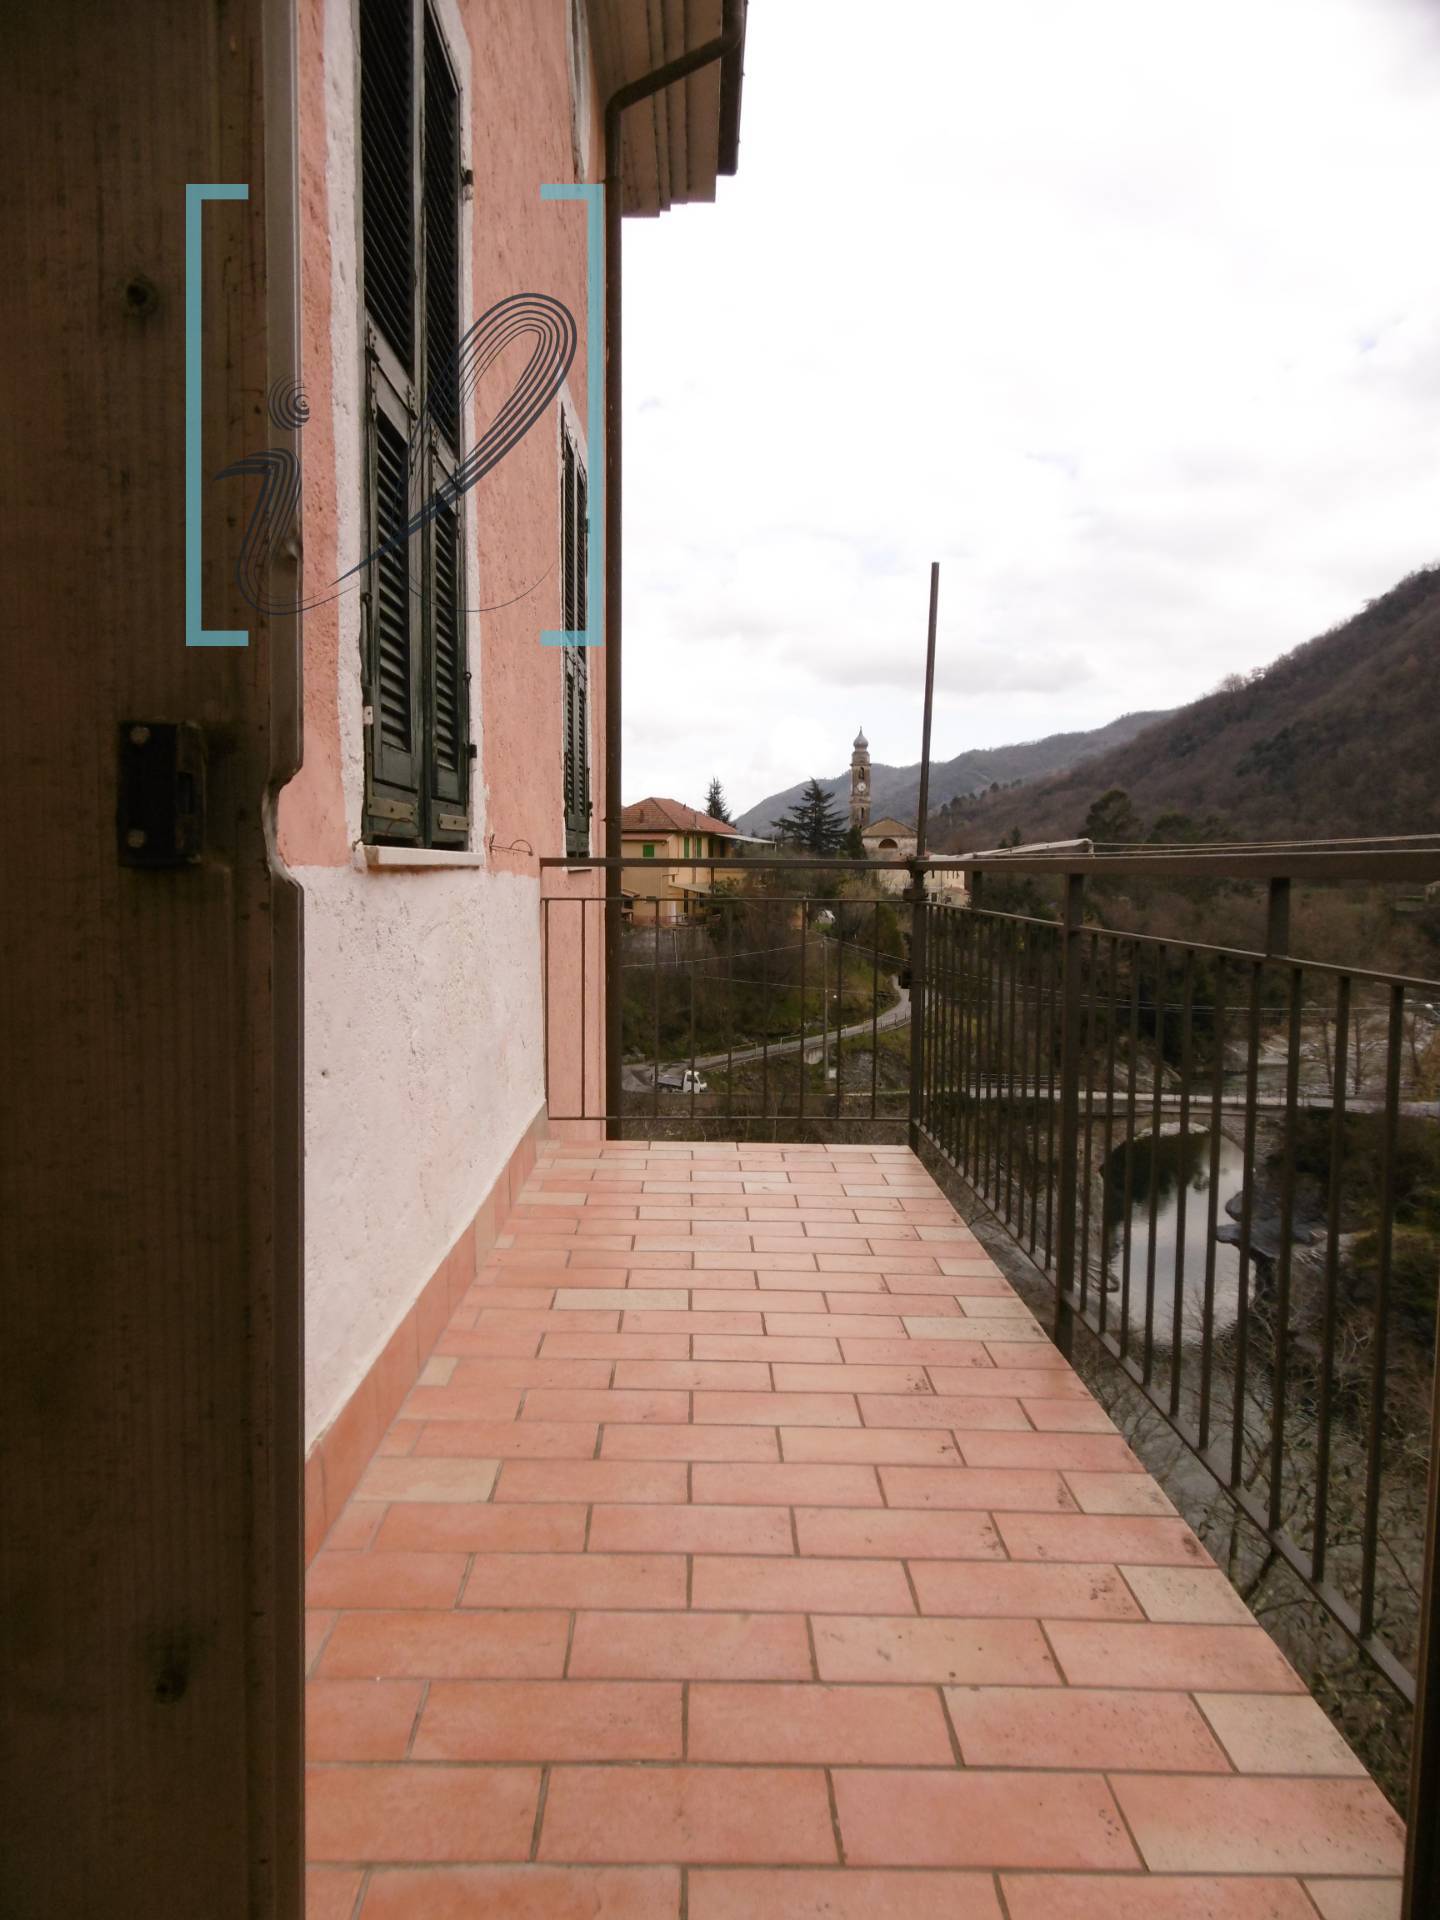 Rustico / Casale in vendita a Ranzo, 5 locali, prezzo € 120.000 | PortaleAgenzieImmobiliari.it